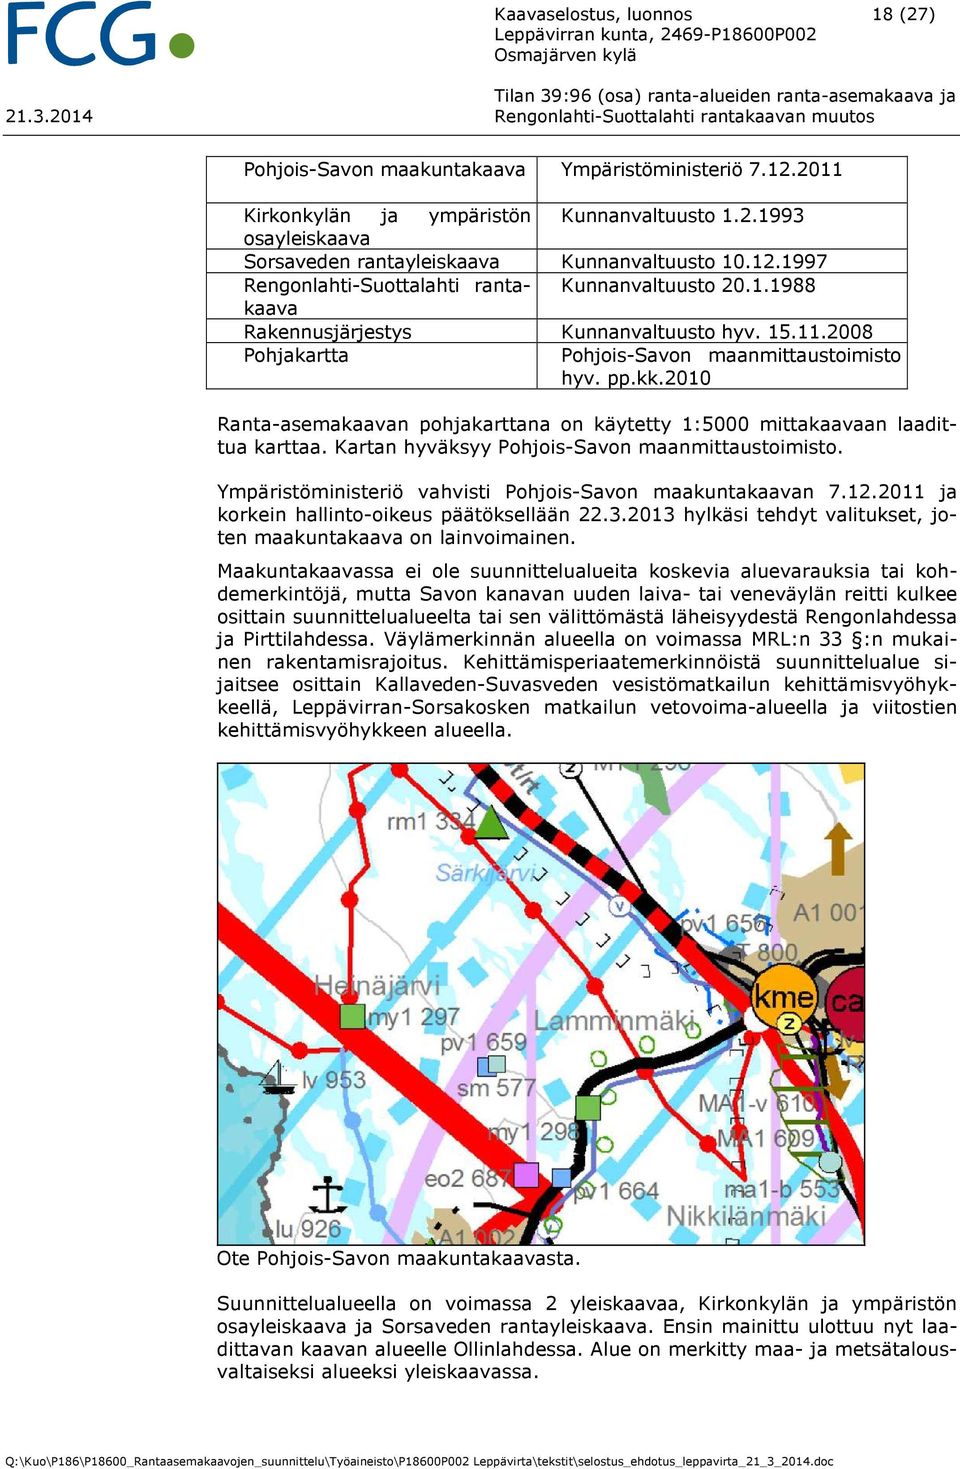 2010 Ranta-asemakaavan pohjakarttana on käytetty 1:5000 mittakaavaan laadittua karttaa. Kartan hyväksyy Pohjois-Savon maanmittaustoimisto. Ympäristöministeriö vahvisti Pohjois-Savon maakuntakaavan 7.